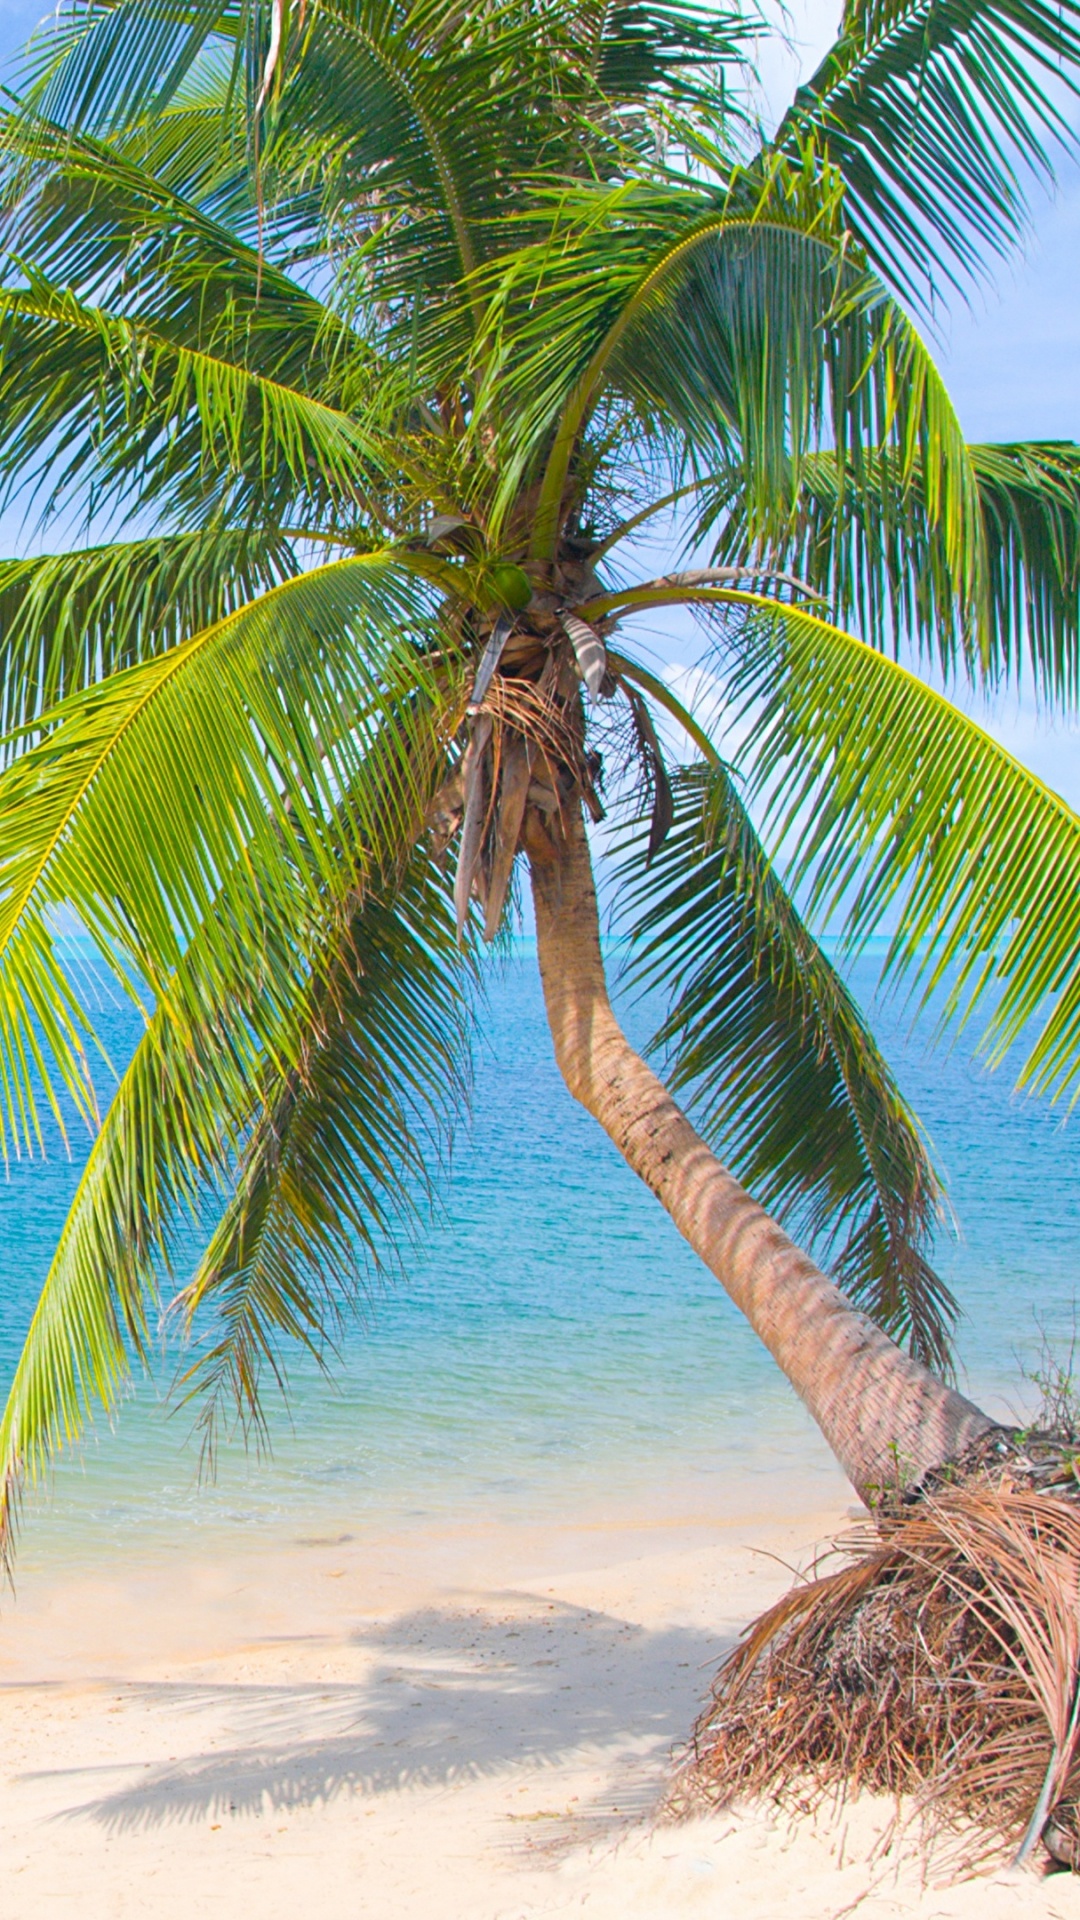 棕榈树, 热带地区, 加勒比, 大海, 岸边 壁纸 1080x1920 允许